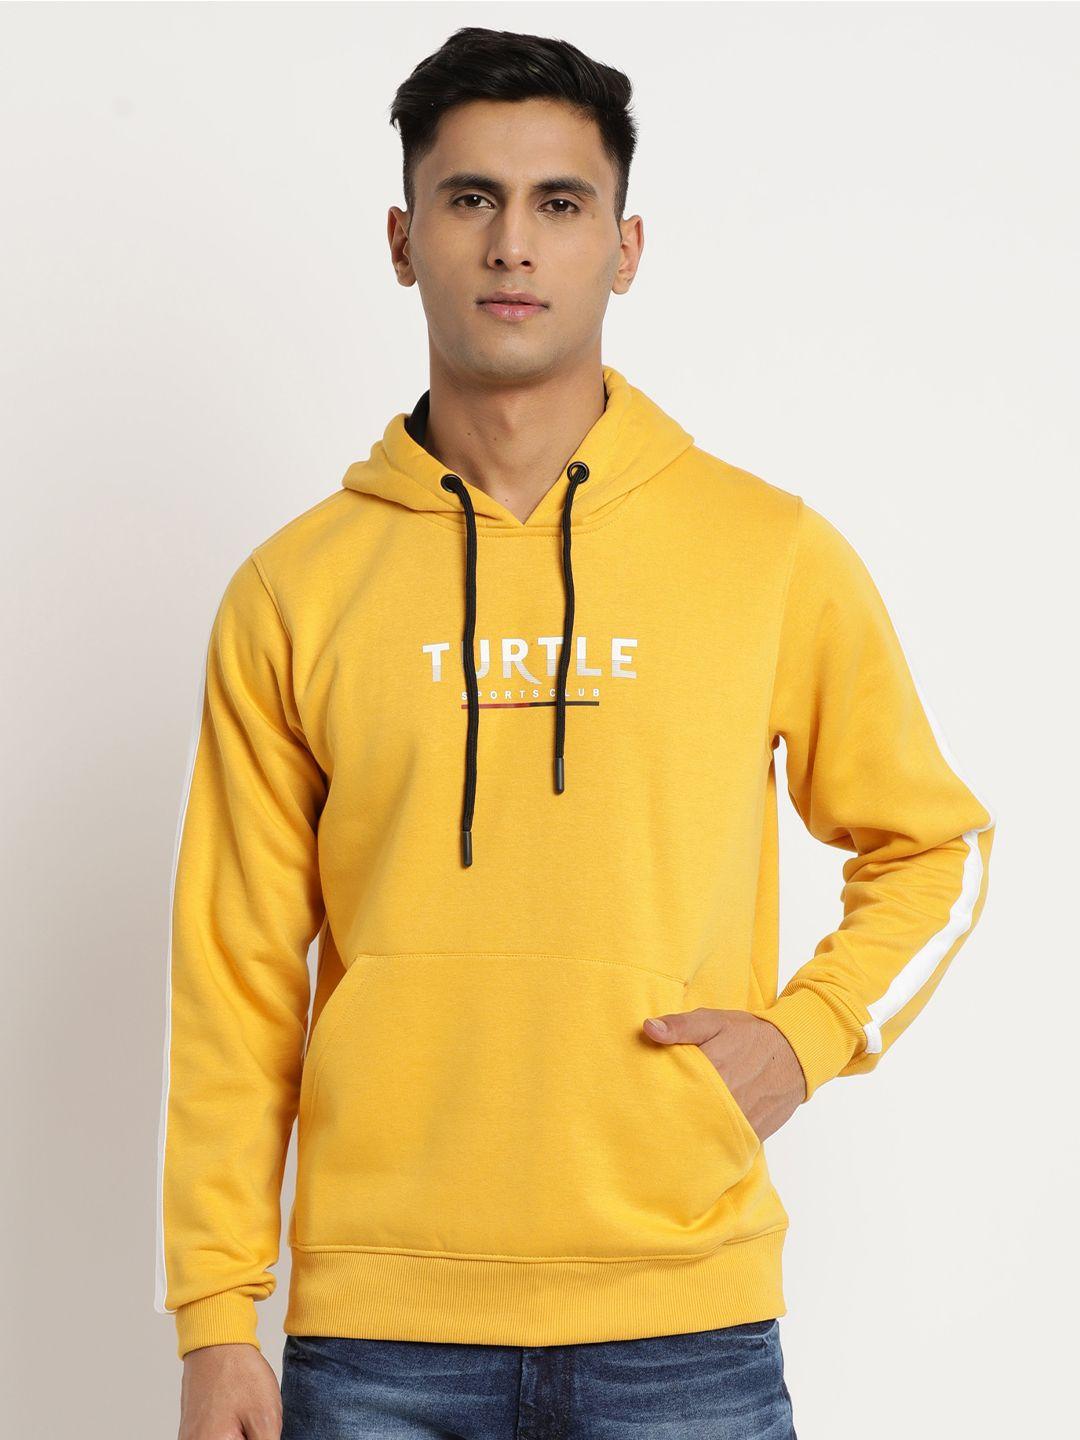 turtle-men-typography-printed-hooded-pullover-sweatshirt